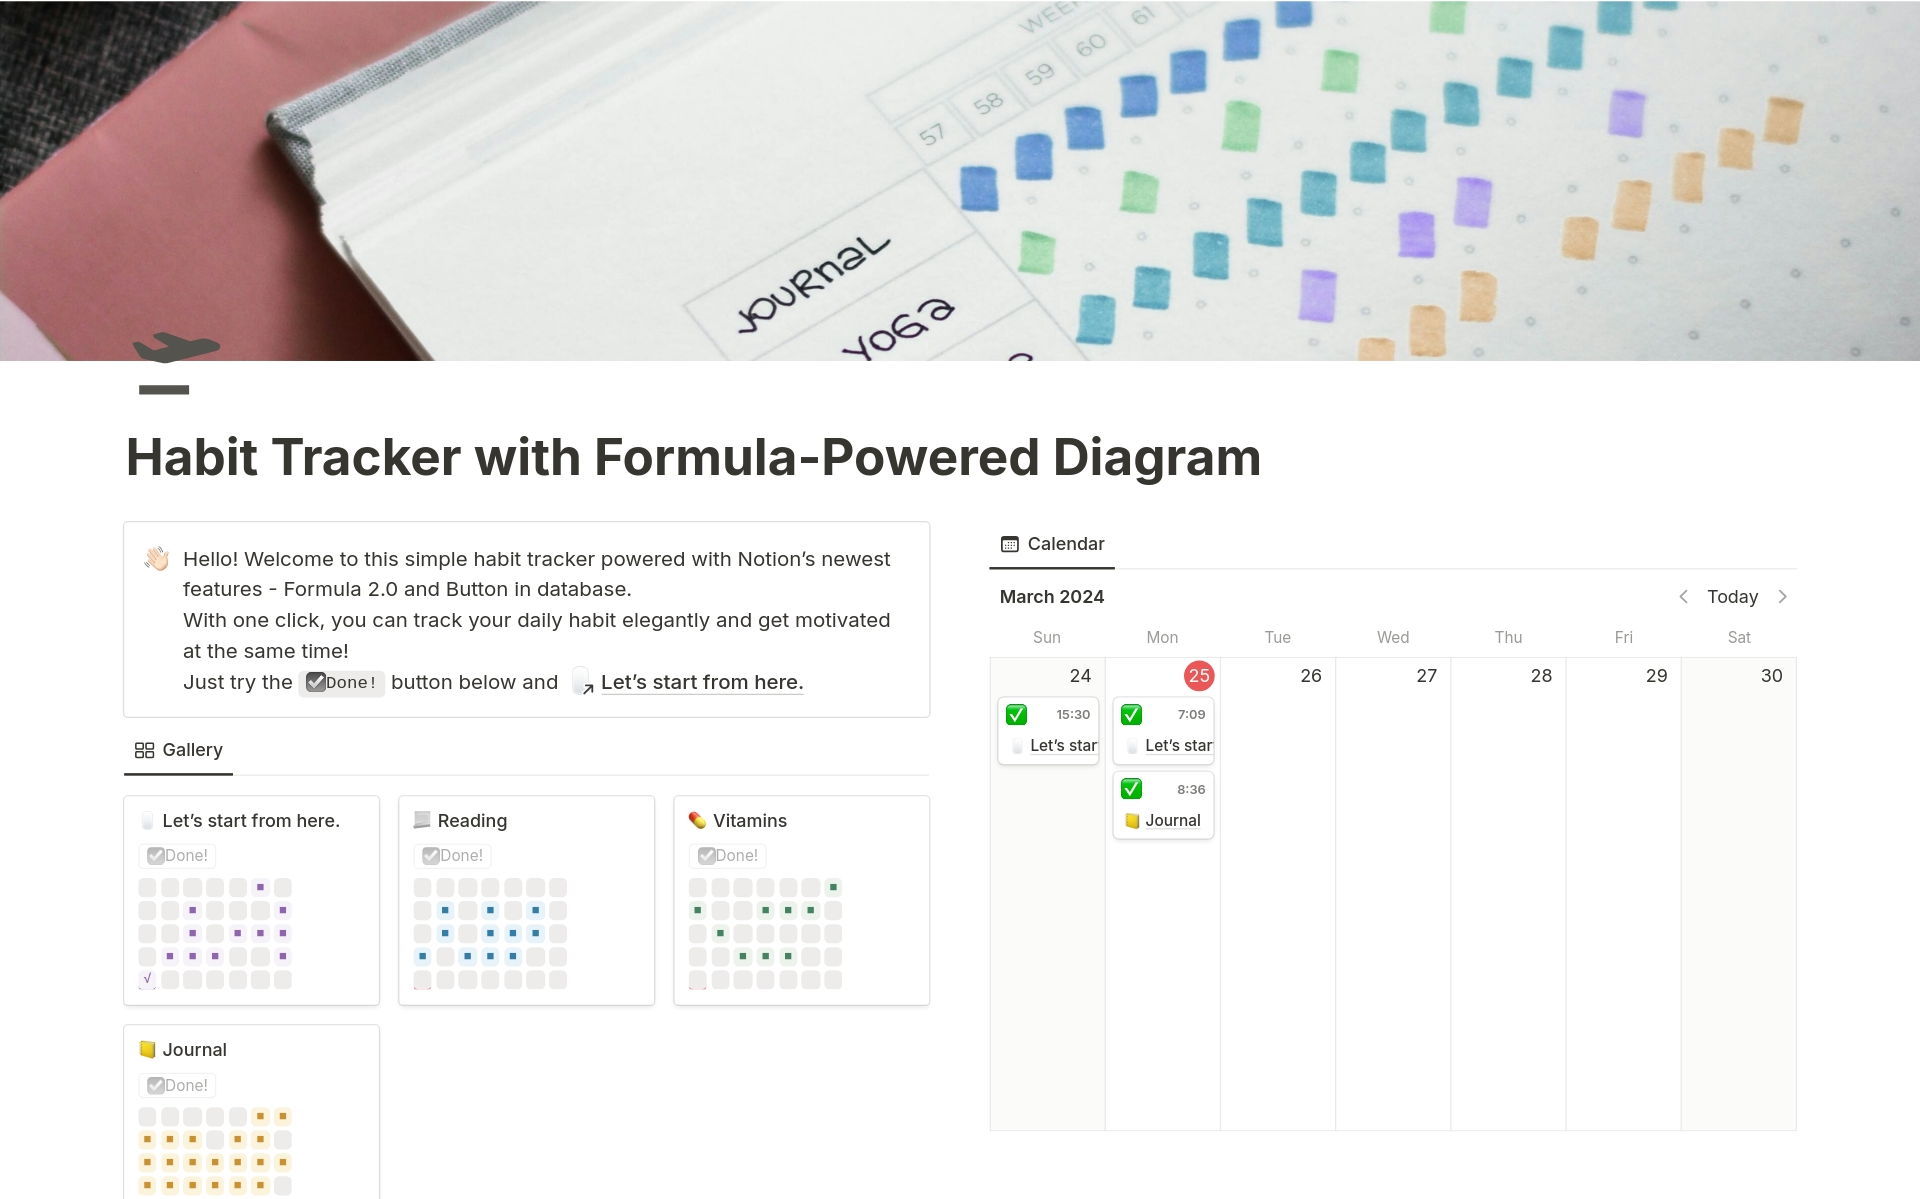 Uma prévia do modelo para Habit Tracker with Formula-Powered Diagram